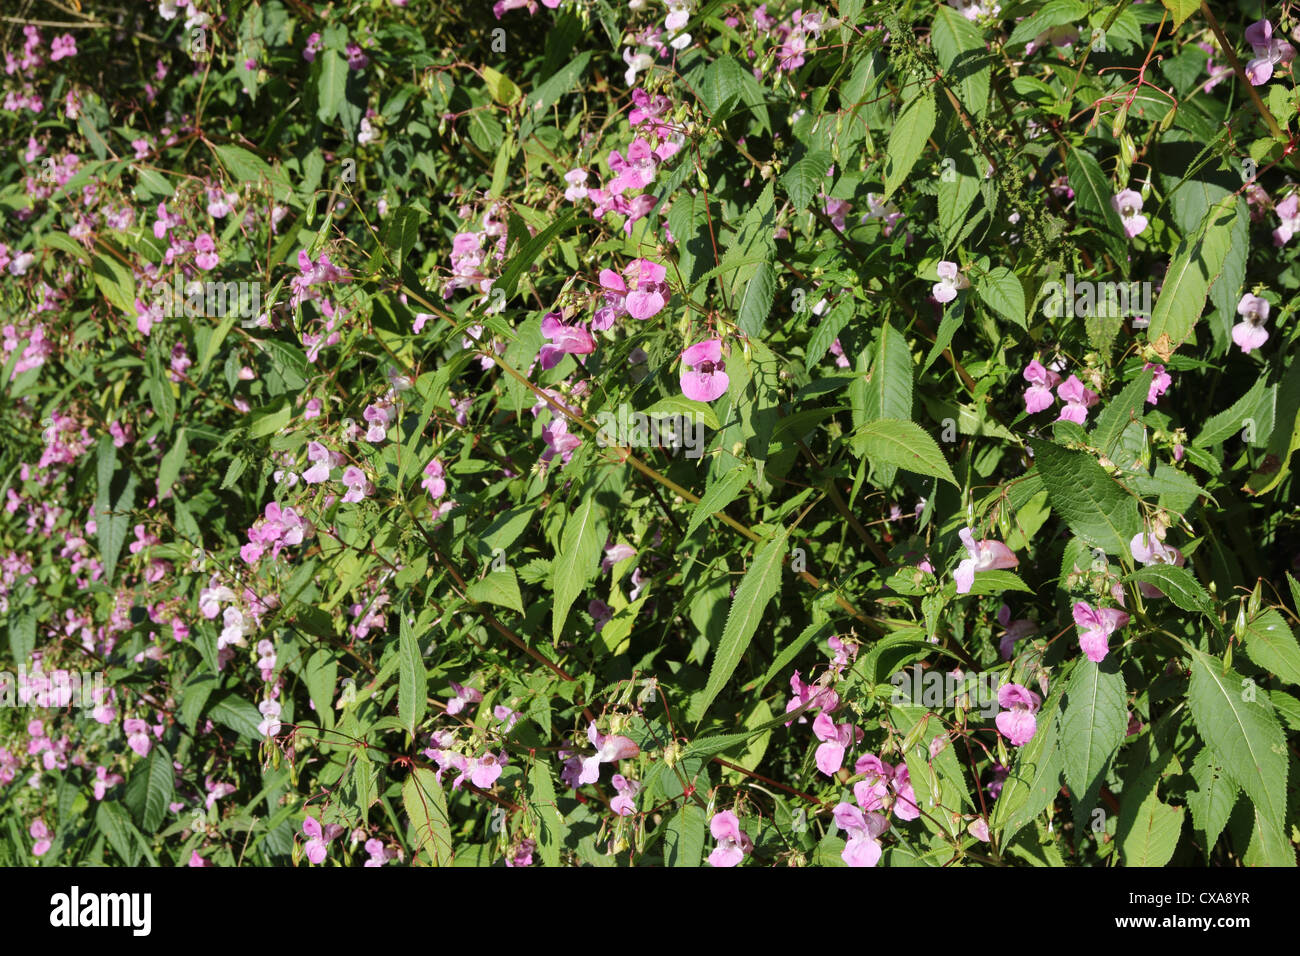 O dell'Himalaya indiano (Balsamina Impatiens glandulifera) un non invasiva delle piante native in crescita nel Regno Unito Foto Stock